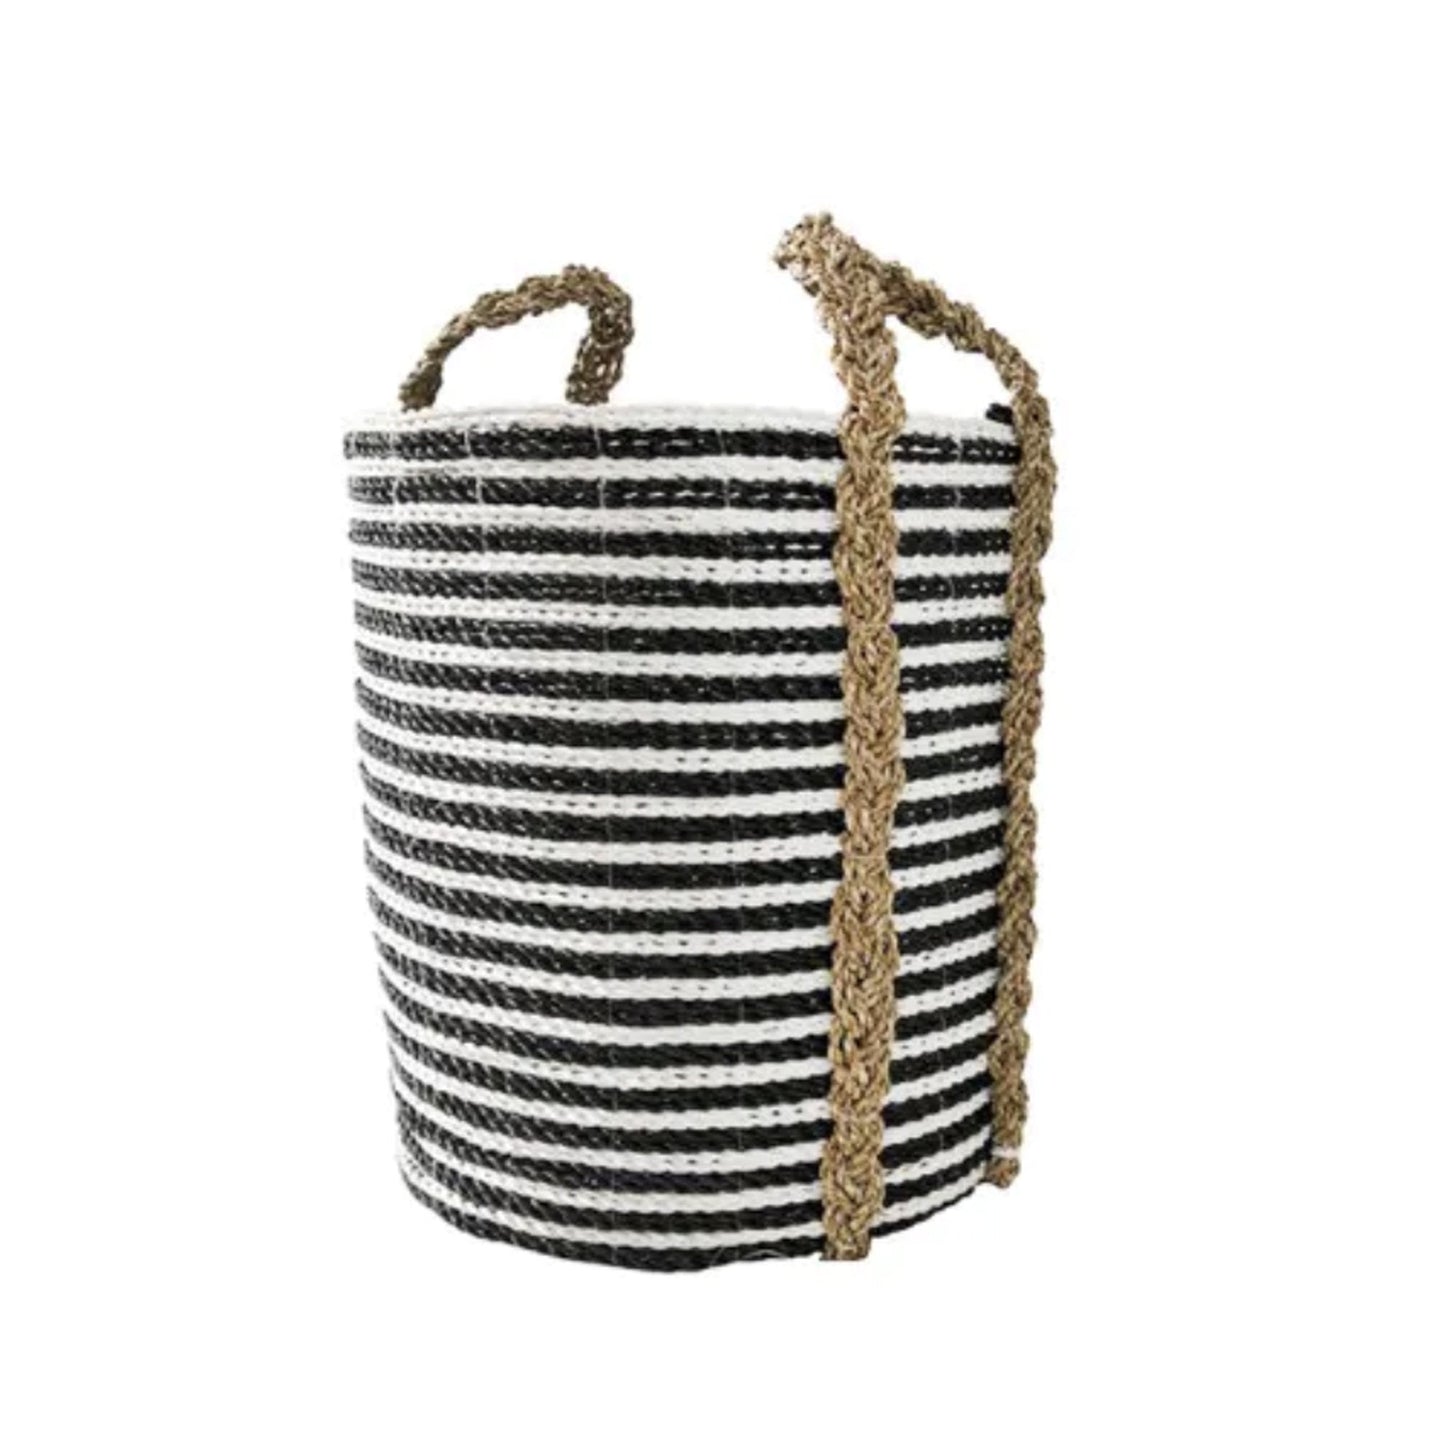 Handgefertigter Korb mit schwarz-weißen Streifen - Vandeley